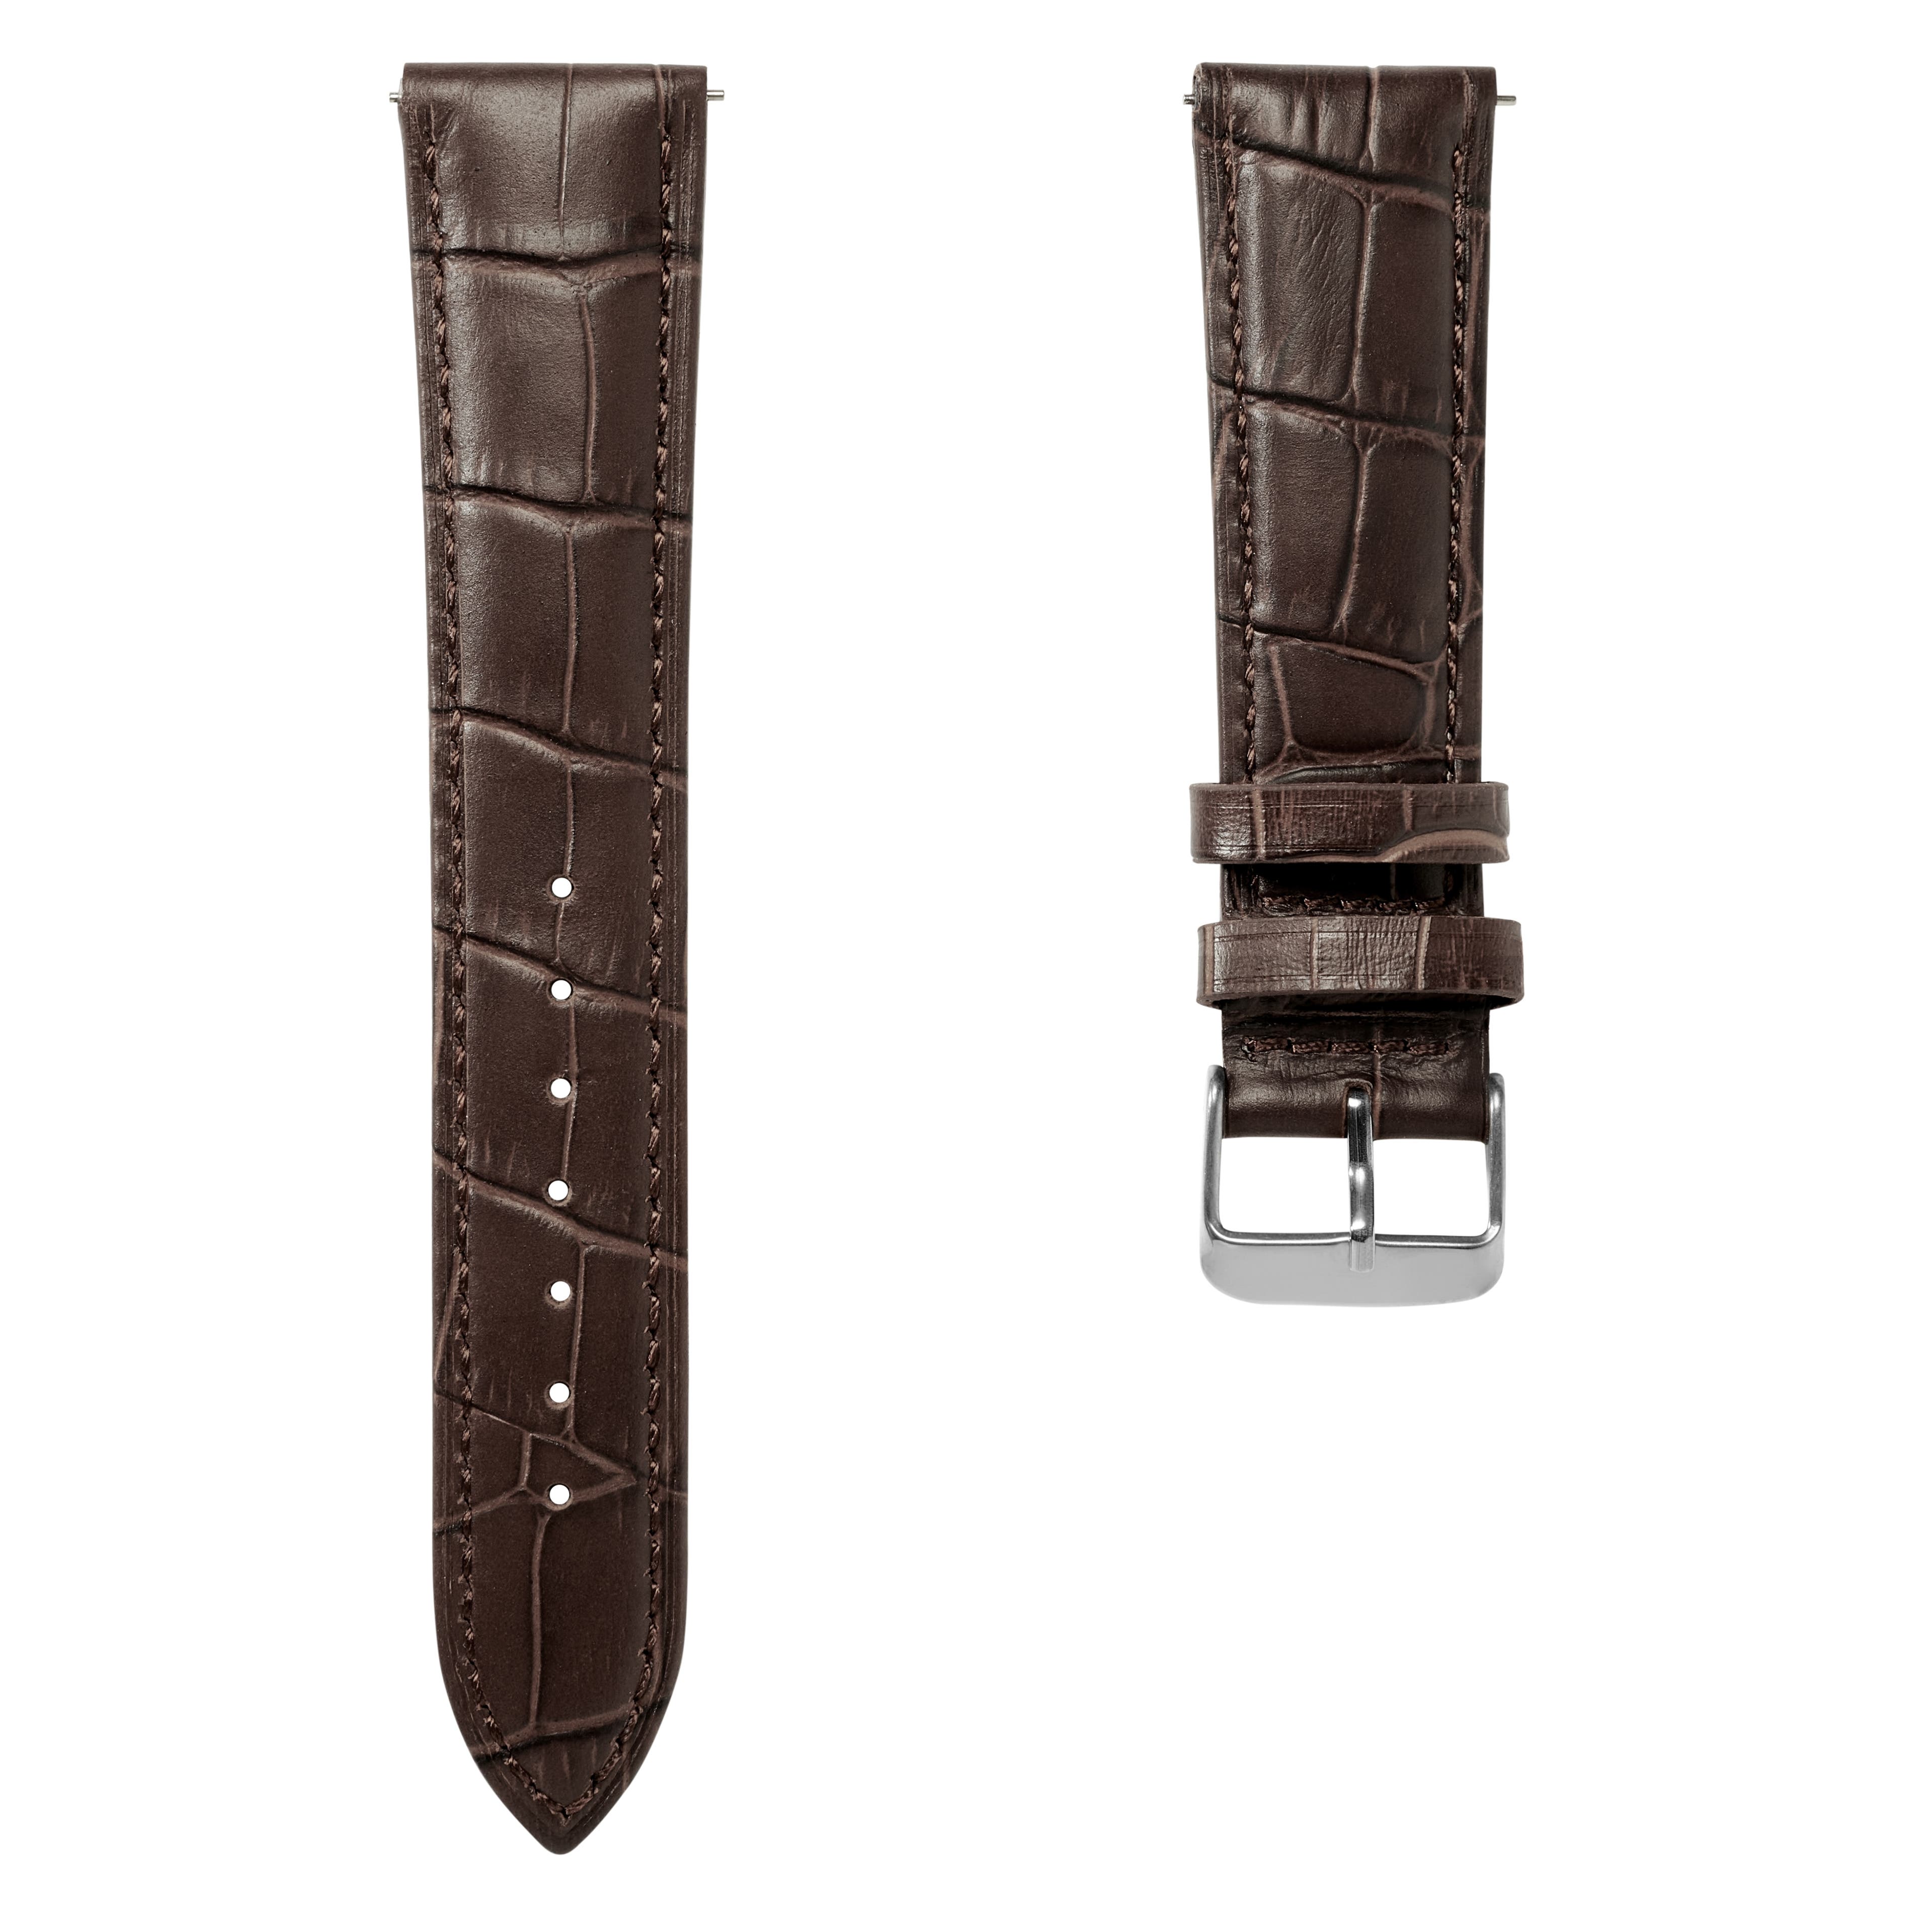  Bracelet de montre en cuir marron foncé à motif crocodile avec boucle couleur argent et système d'attache rapide – 20 mm